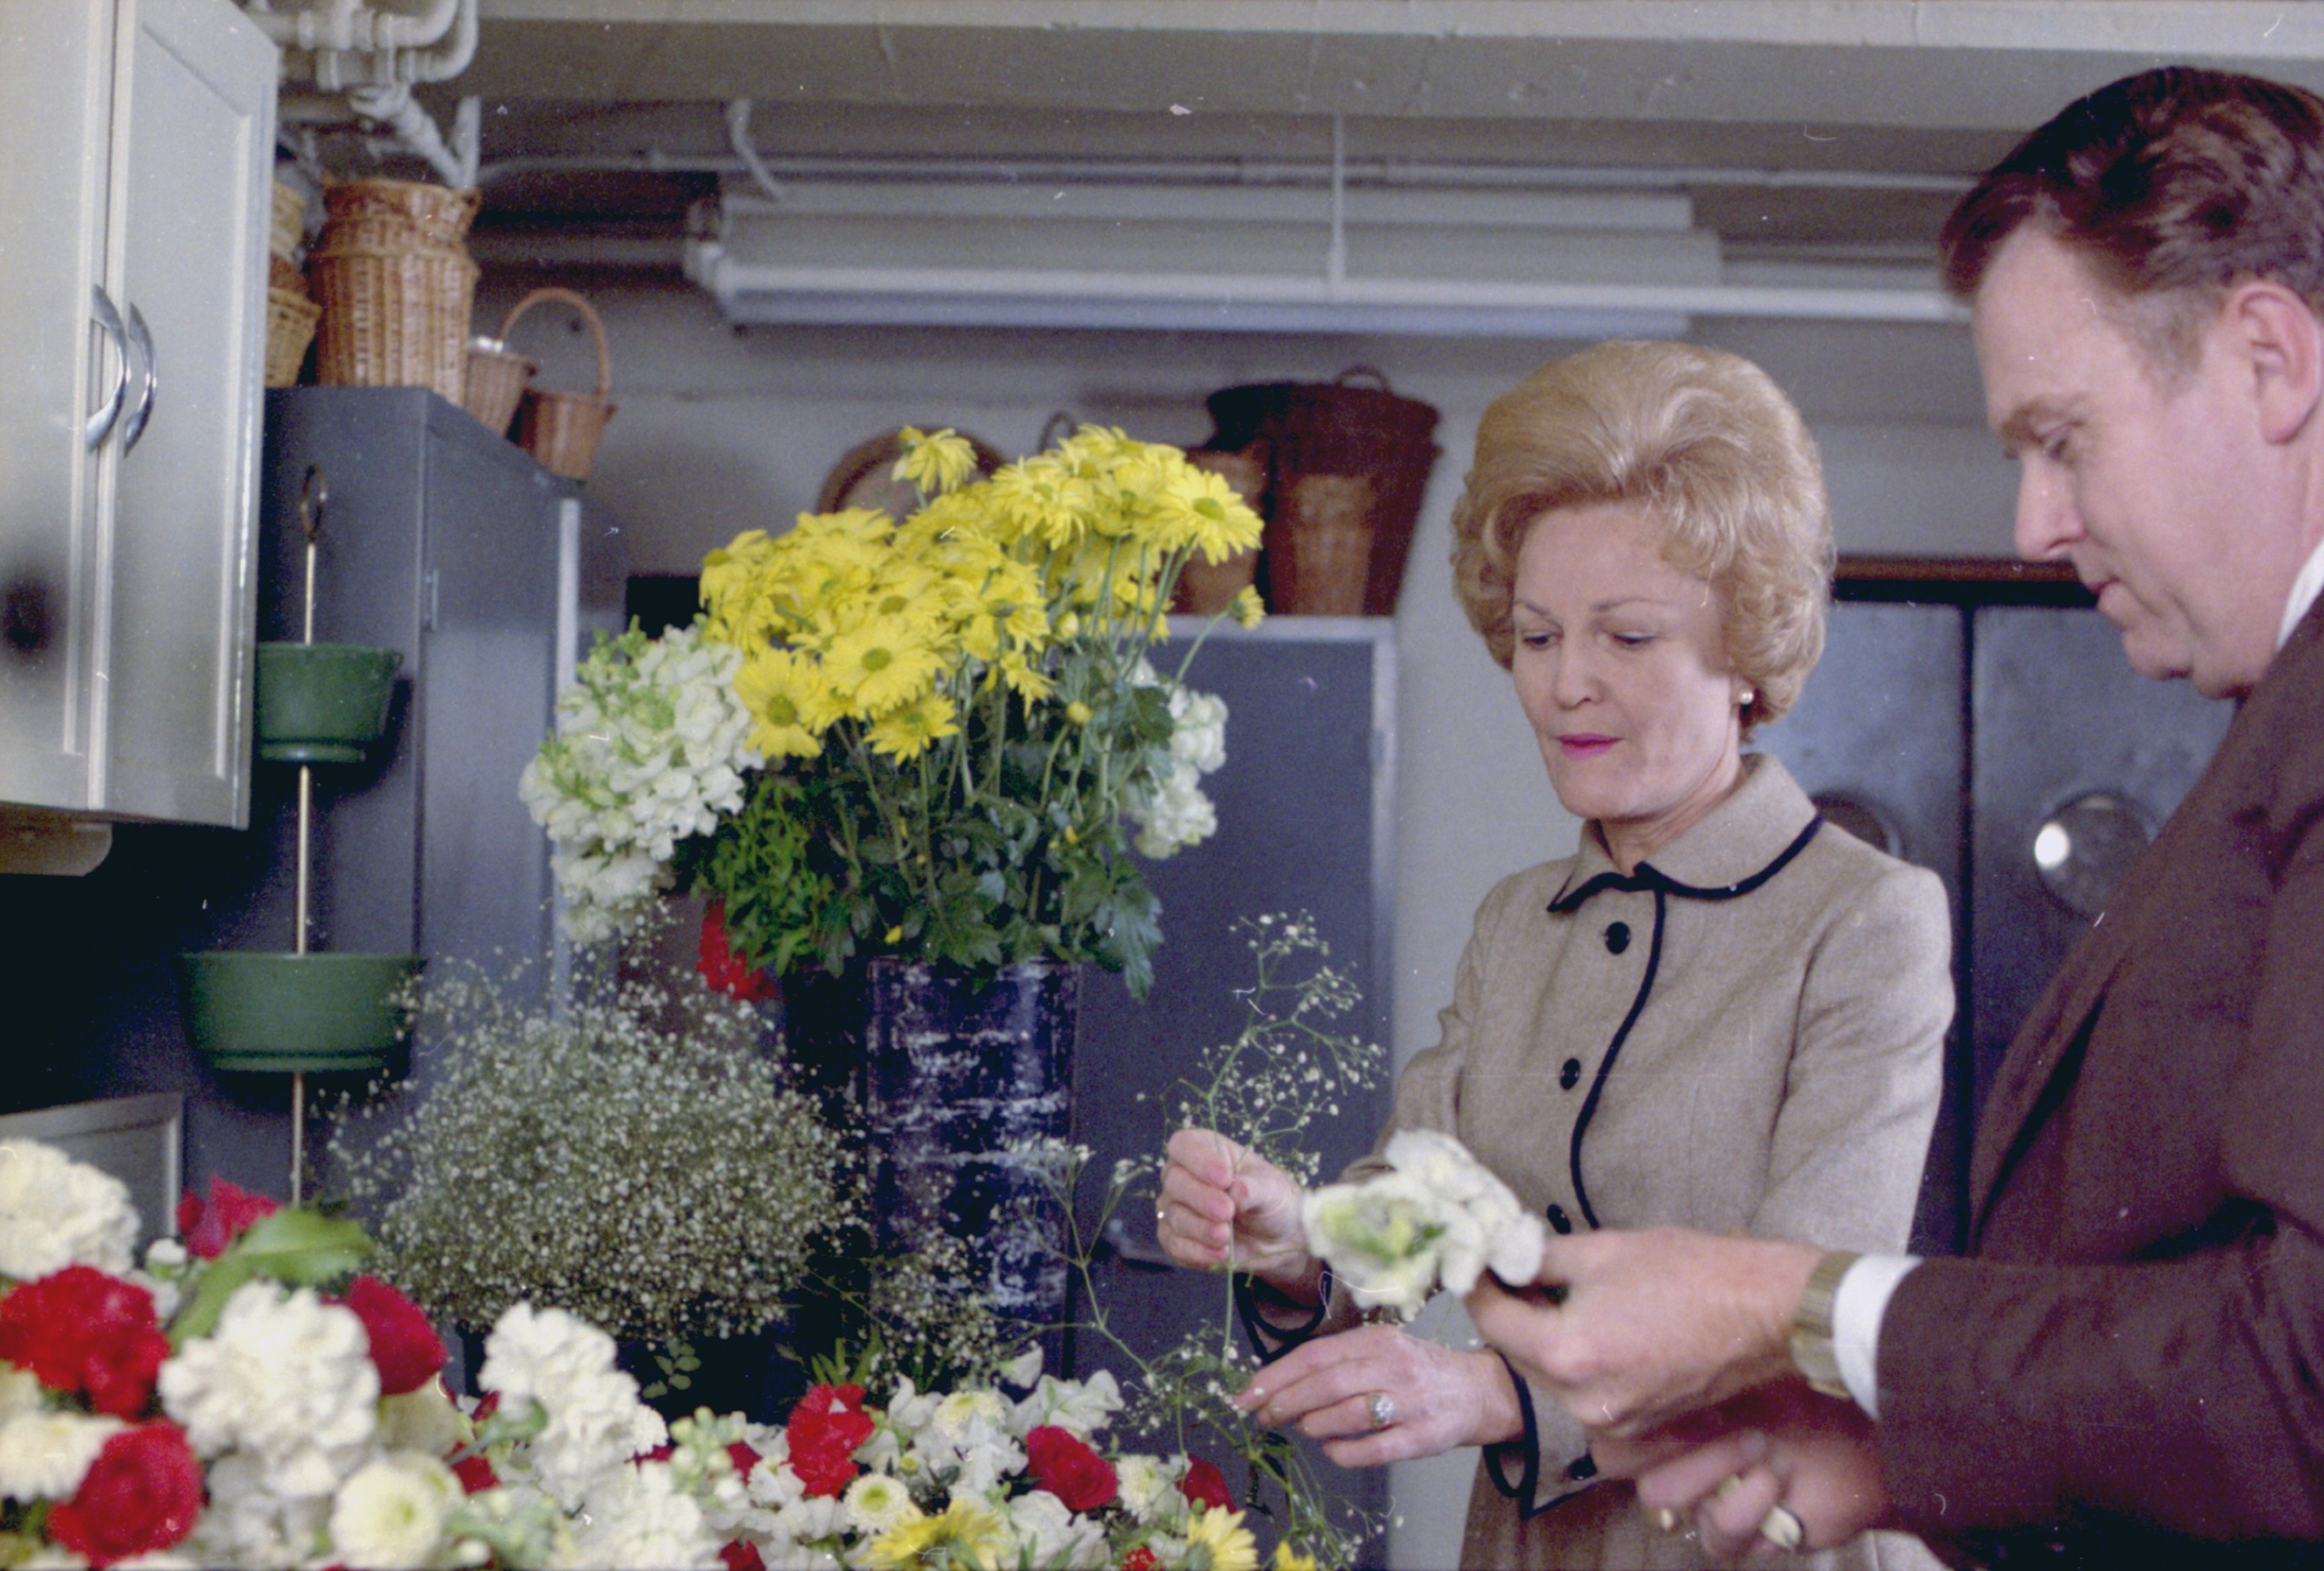 Pat Nixon flowers